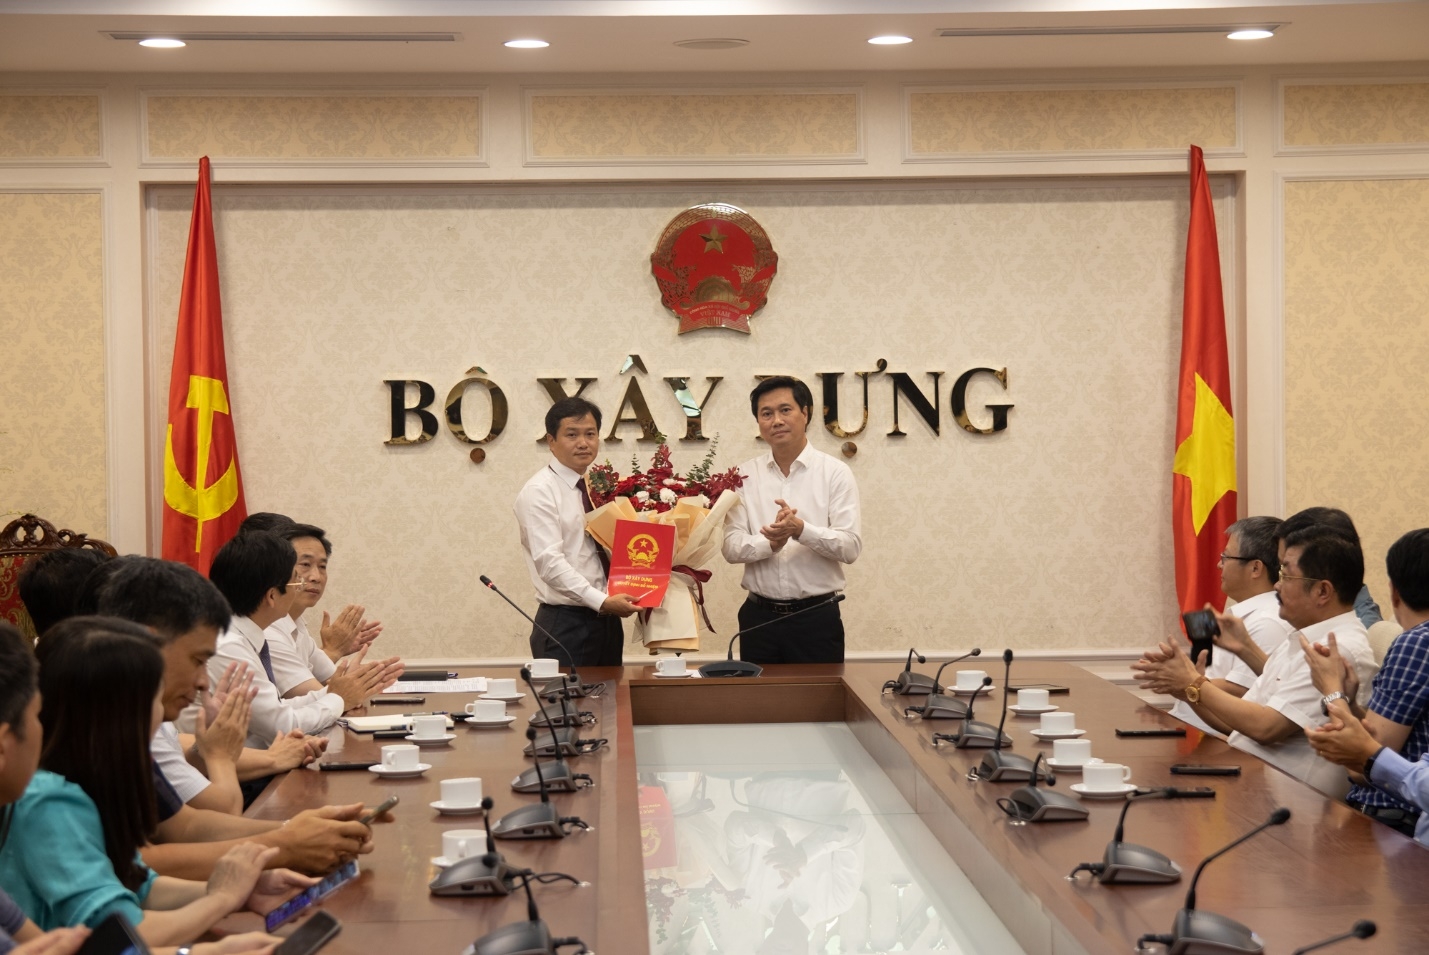 Bộ trưởng Nguyễn Thanh Nghị bổ nhiệm nhân sự mới tại Bộ Xây dựng - Ảnh 3.